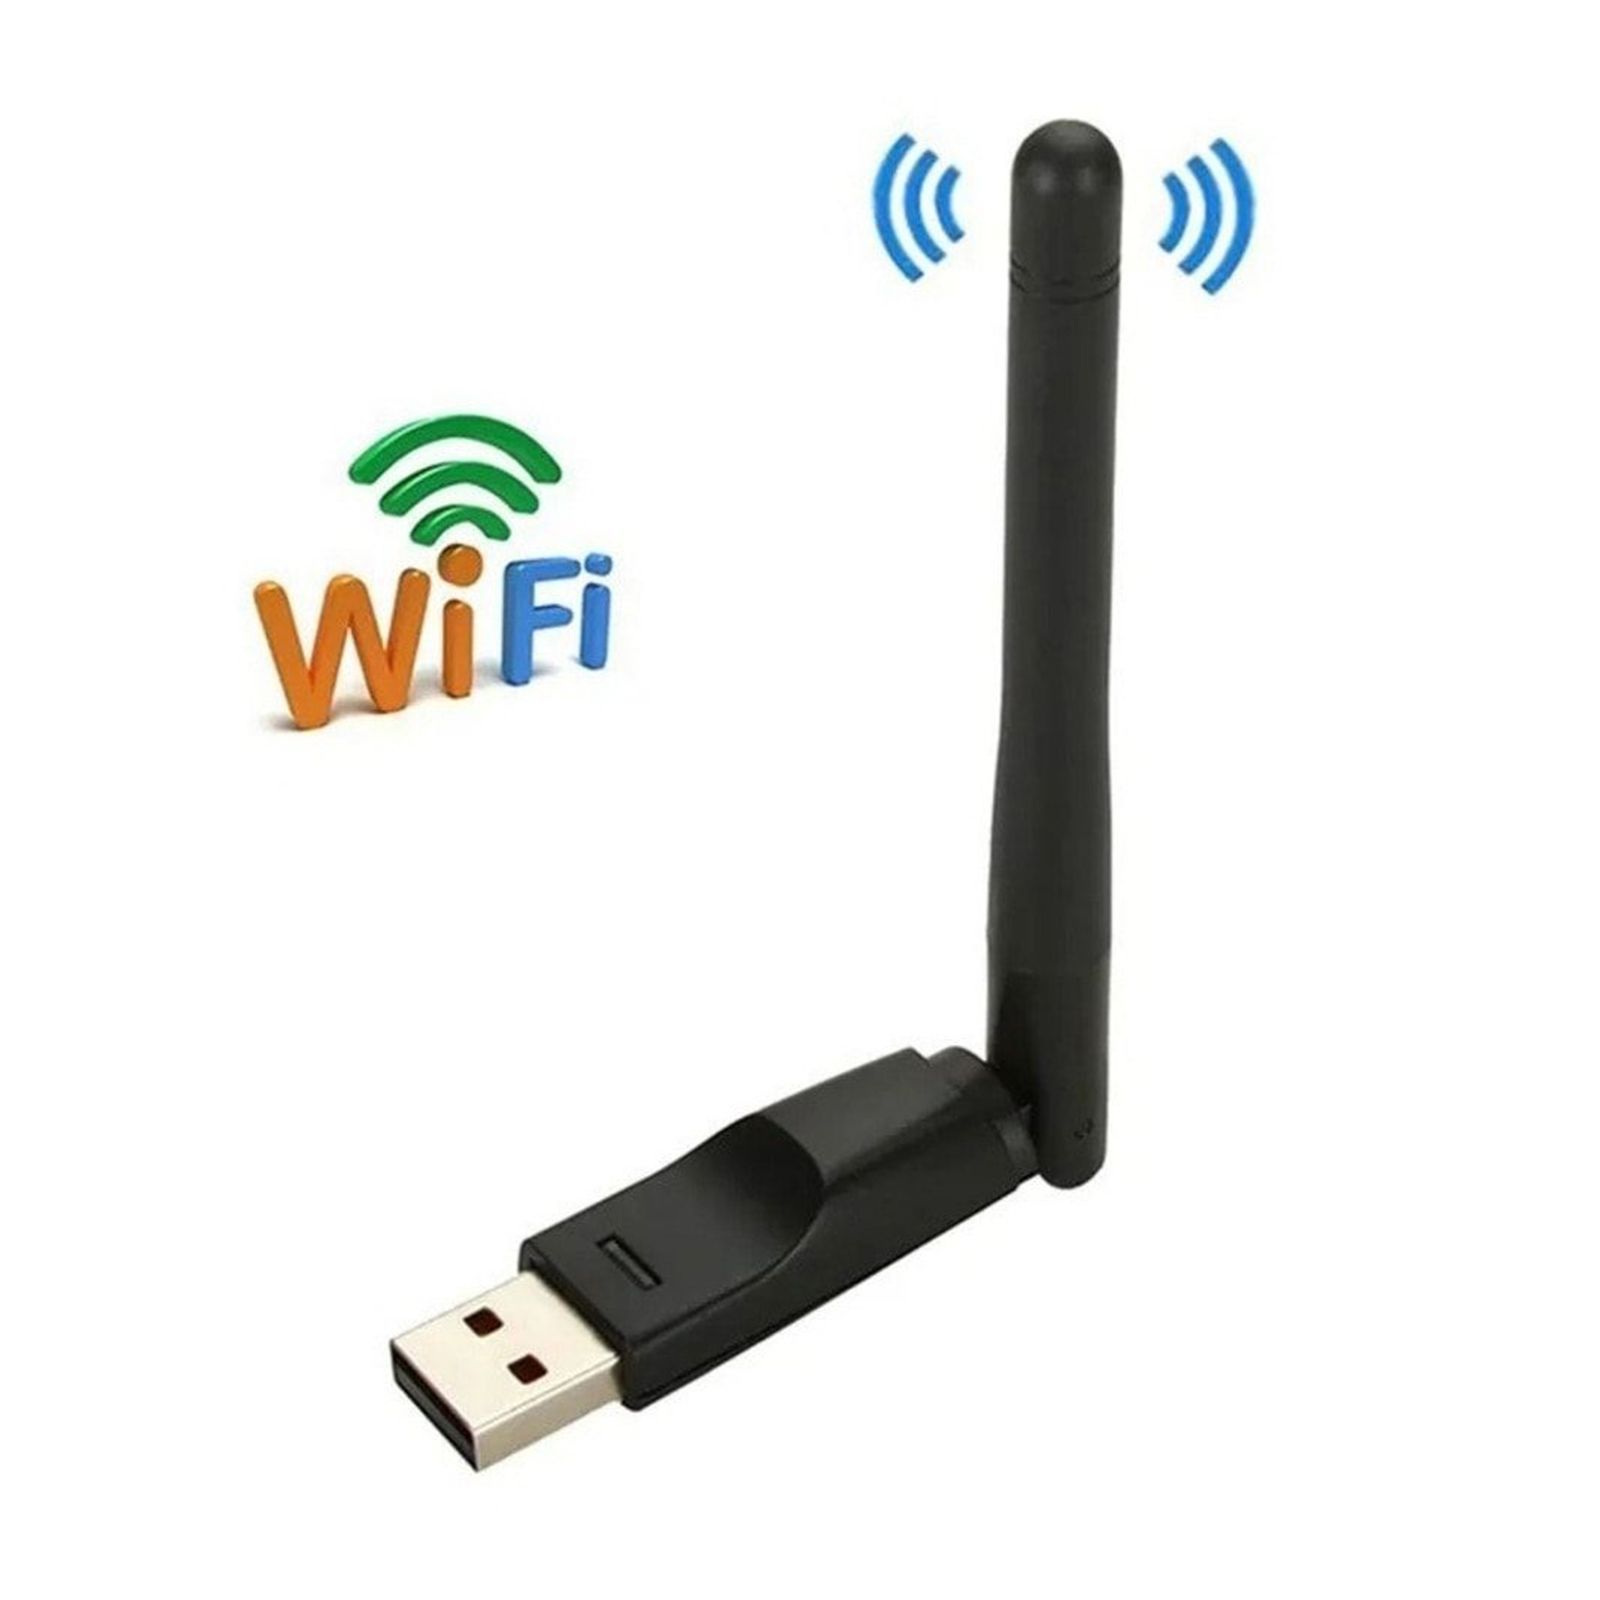 Беспроводная usb связь. WIFI адаптер mt7601. Wi-Fi адаптер USB mt7601. USB WIFI адаптер rt7601. USB WIFI адаптер с антенной Chipset mt7601.